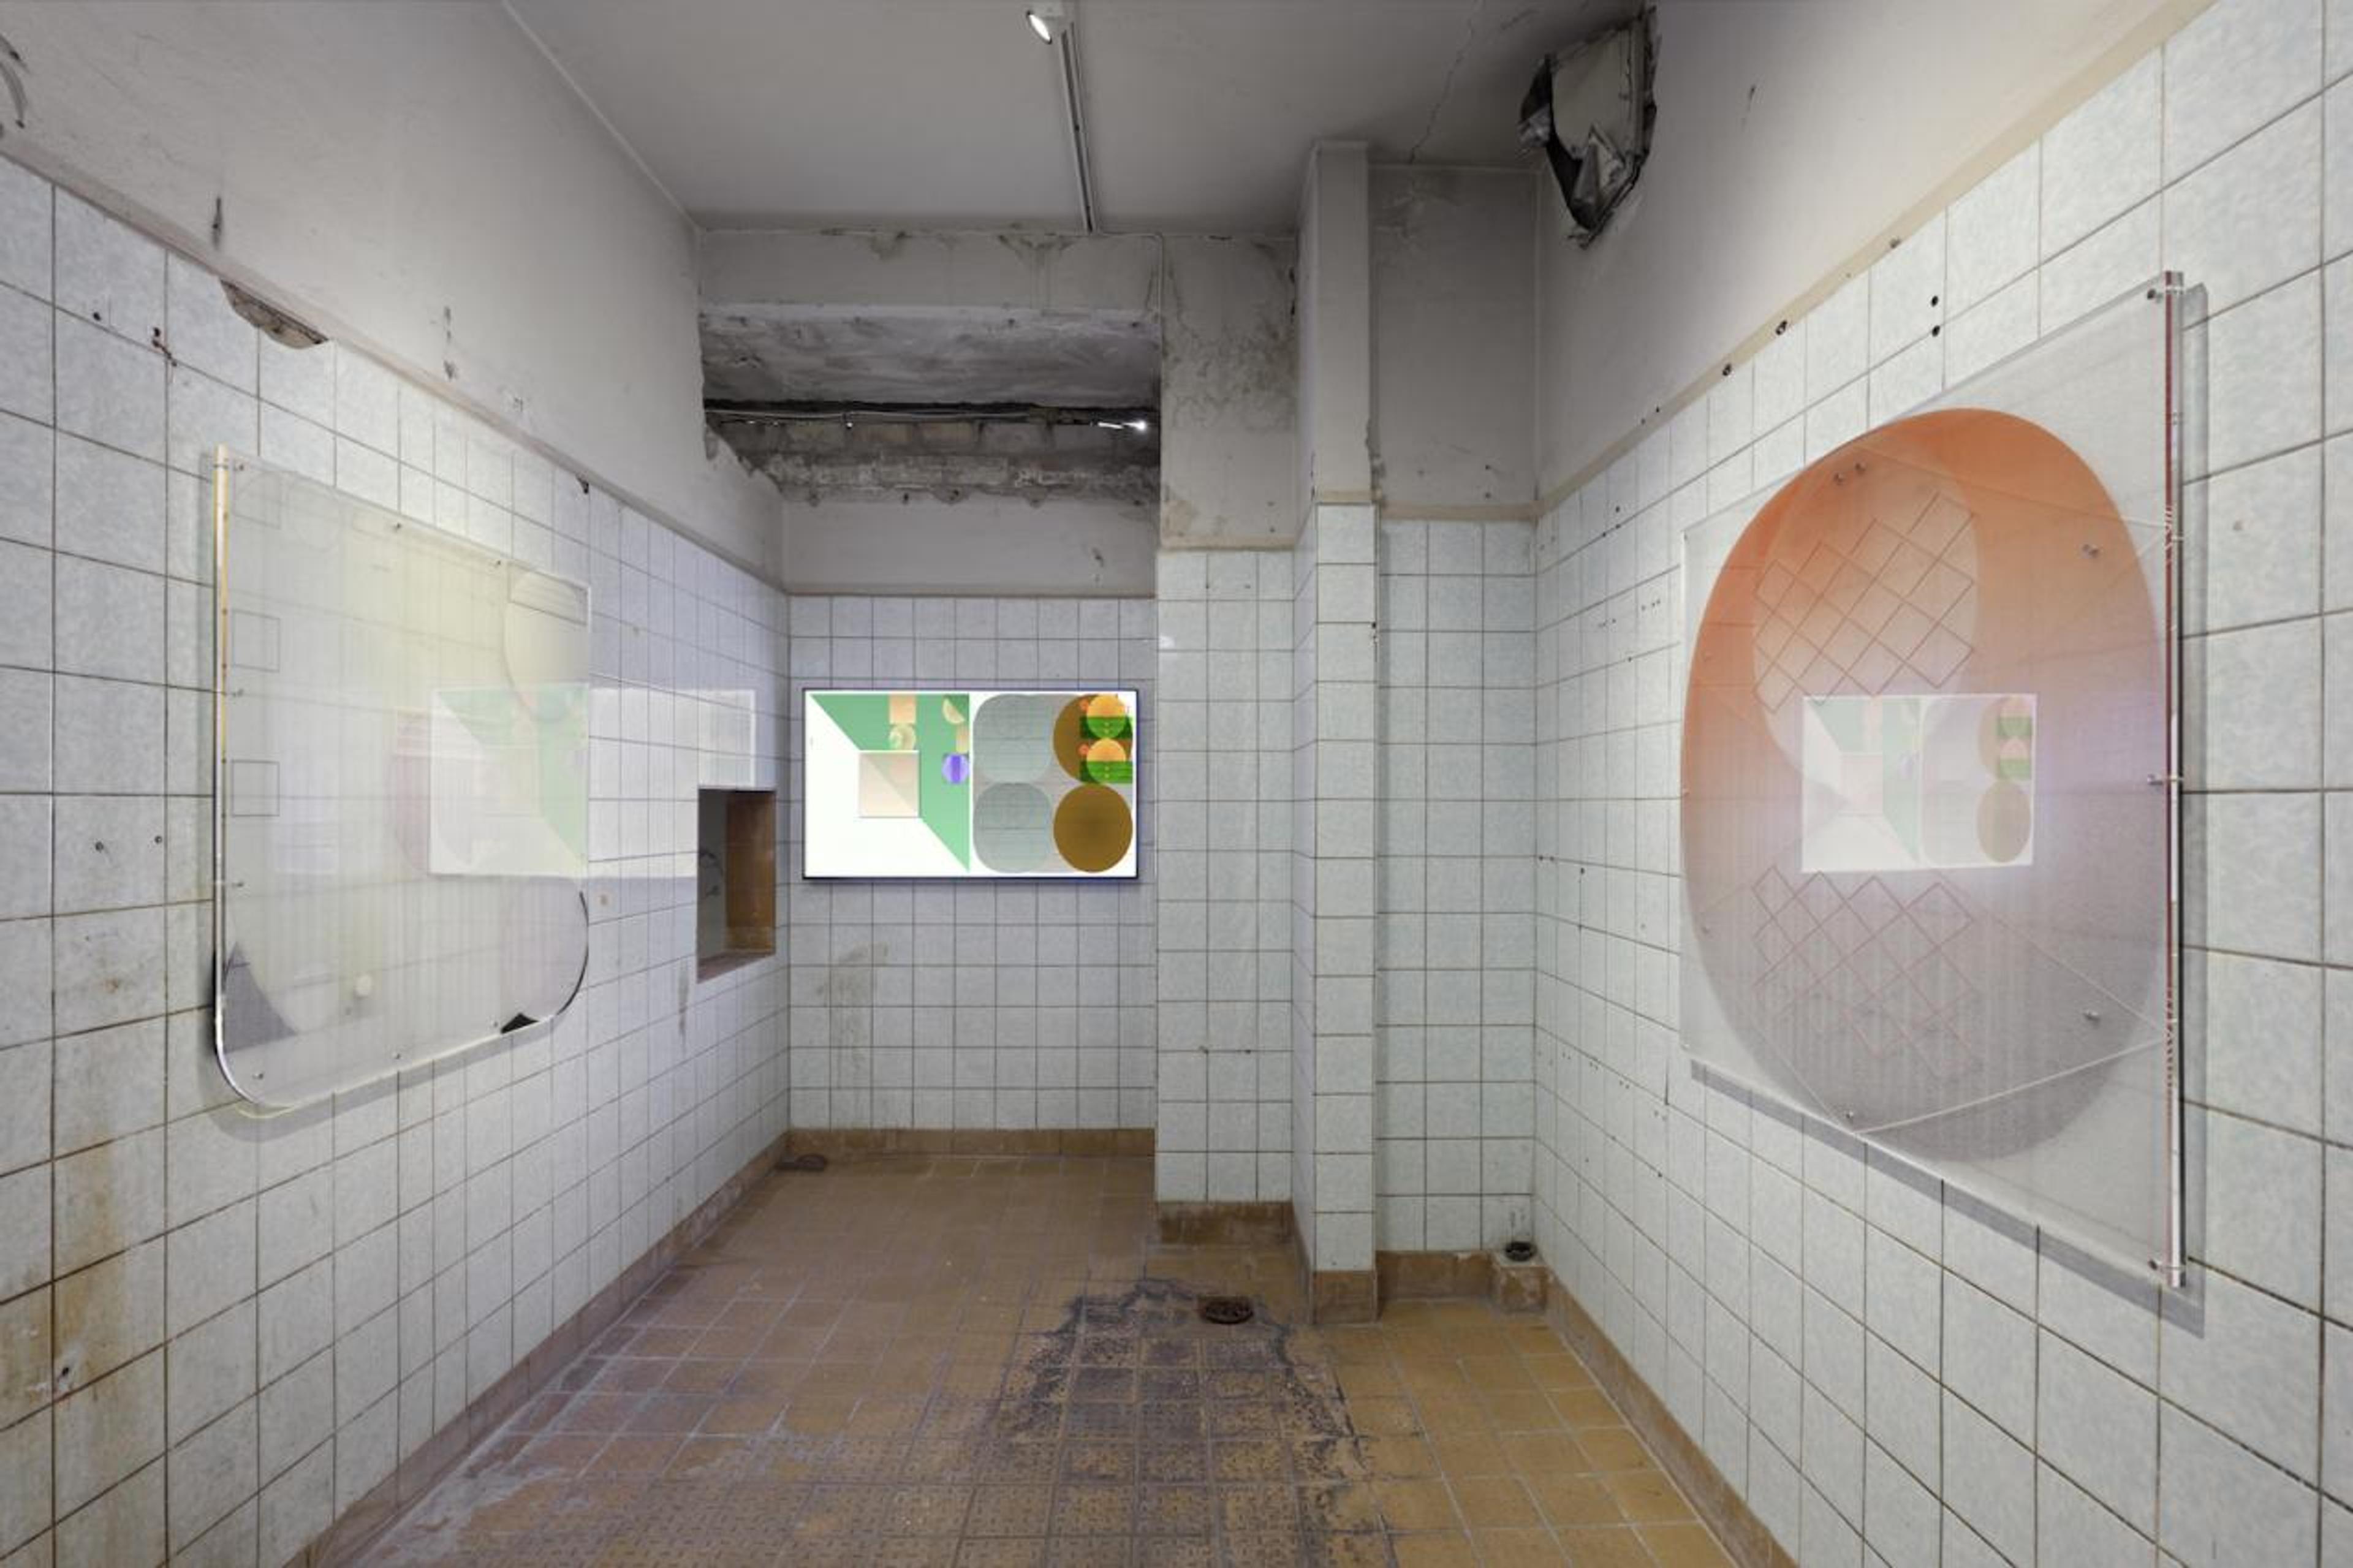 Harm van den Dorpel Nested Exchange Series  (2018)  Installation view, Proof of Work, Schinkel Pavillon, 2018  Photo: Hans-Georg Gaul